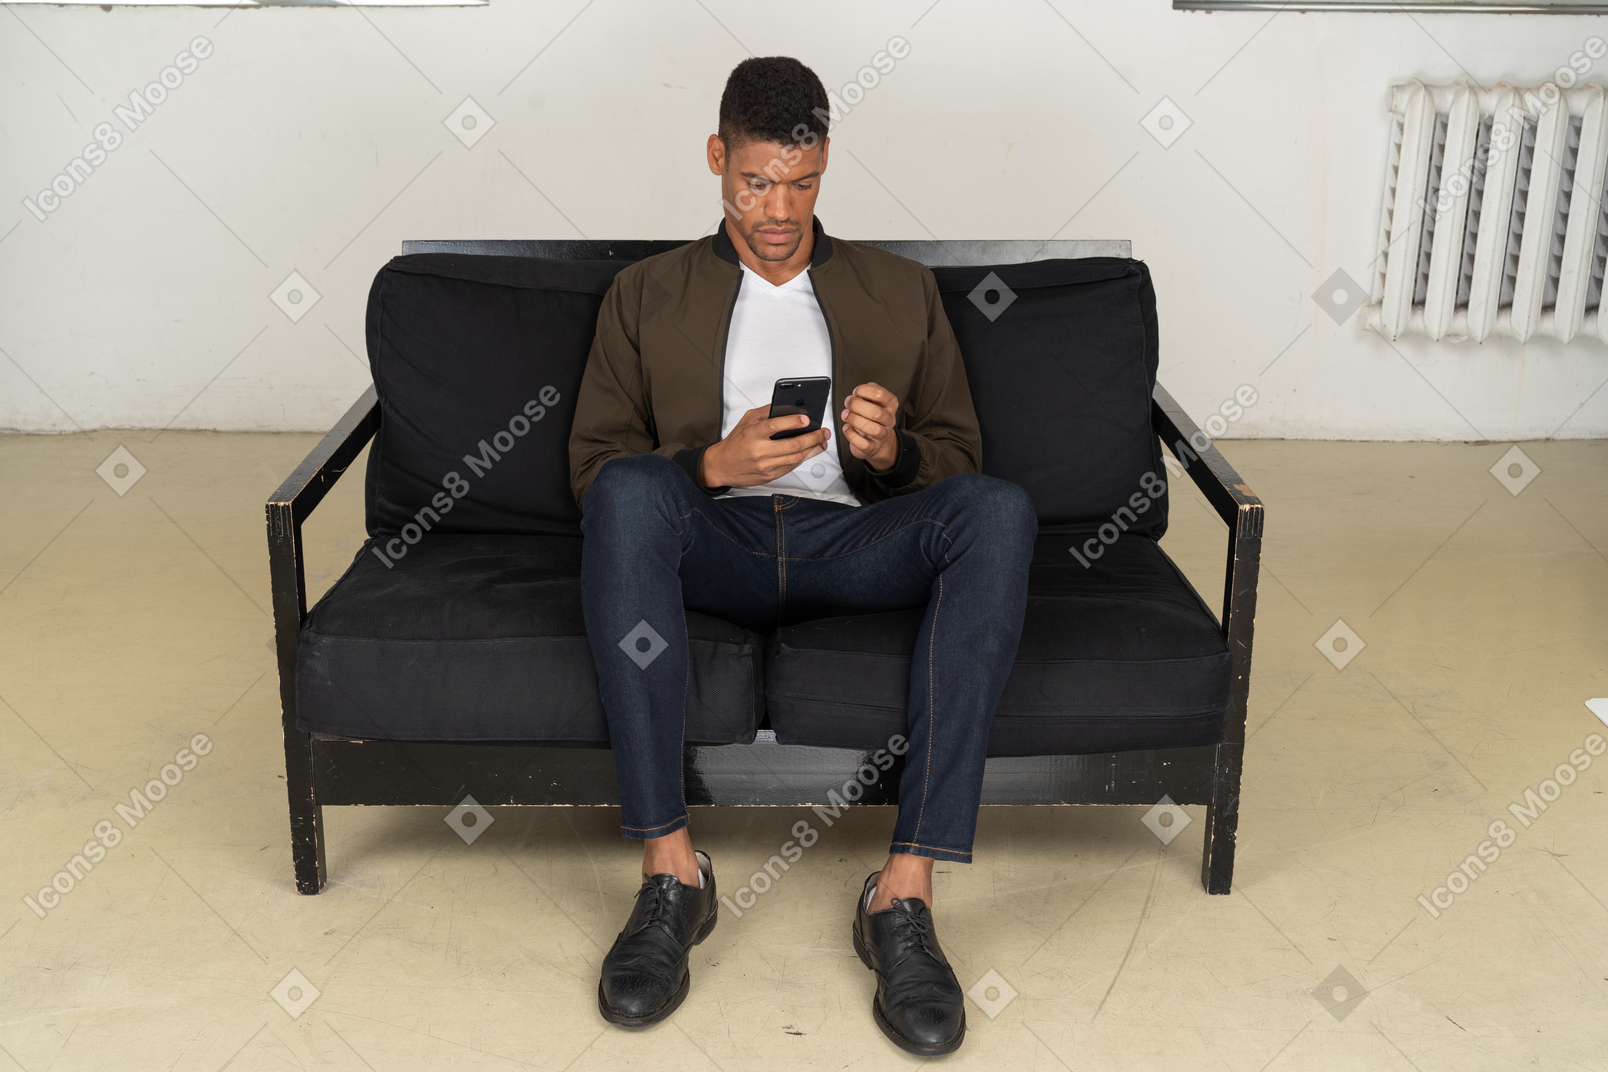 Vista frontal de um jovem sentado em um sofá e olhando para o telefone